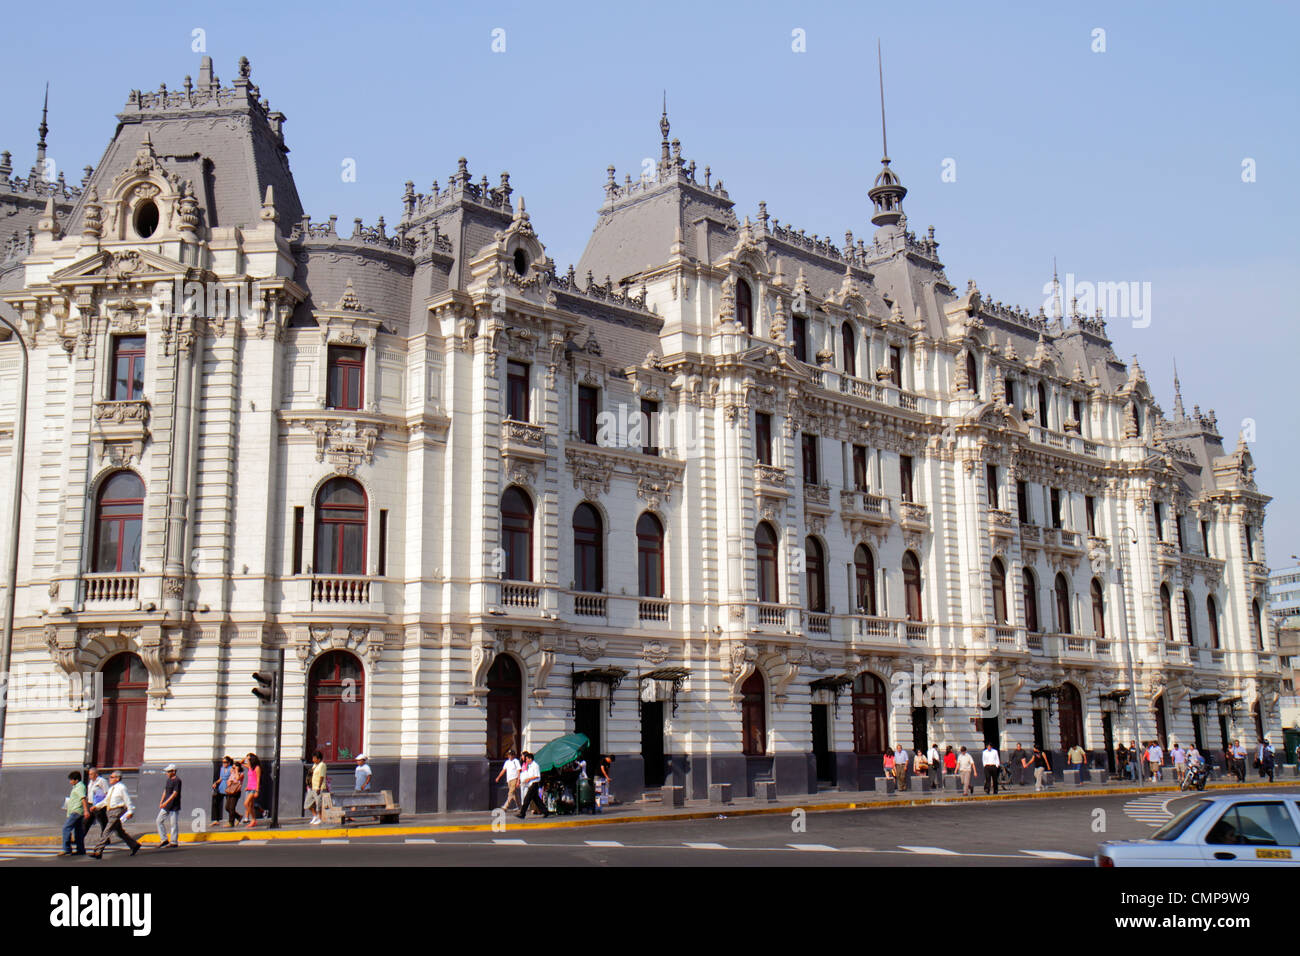 Lima Peru,Real Plaza,Edificio Rímac,Casa Roosevelt,bâtiment,scène de rue,rue,trottoir,Beaux Arts,architecture Malachowski,rue,trottoir,arqué wi Banque D'Images